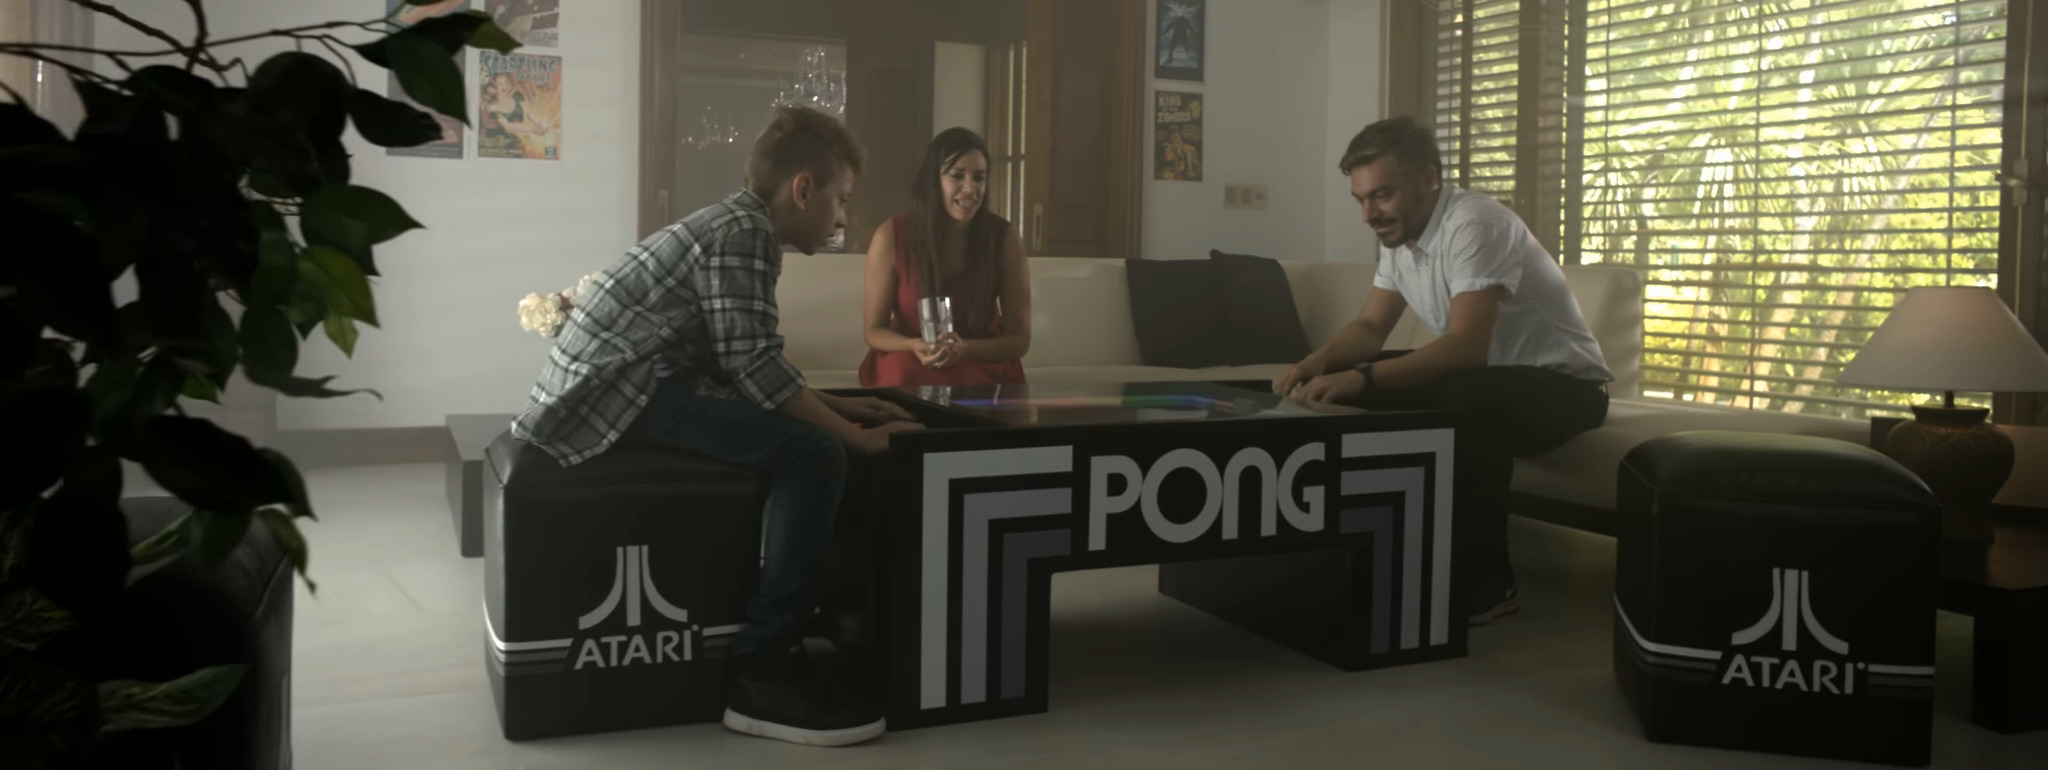 table-pong-demo